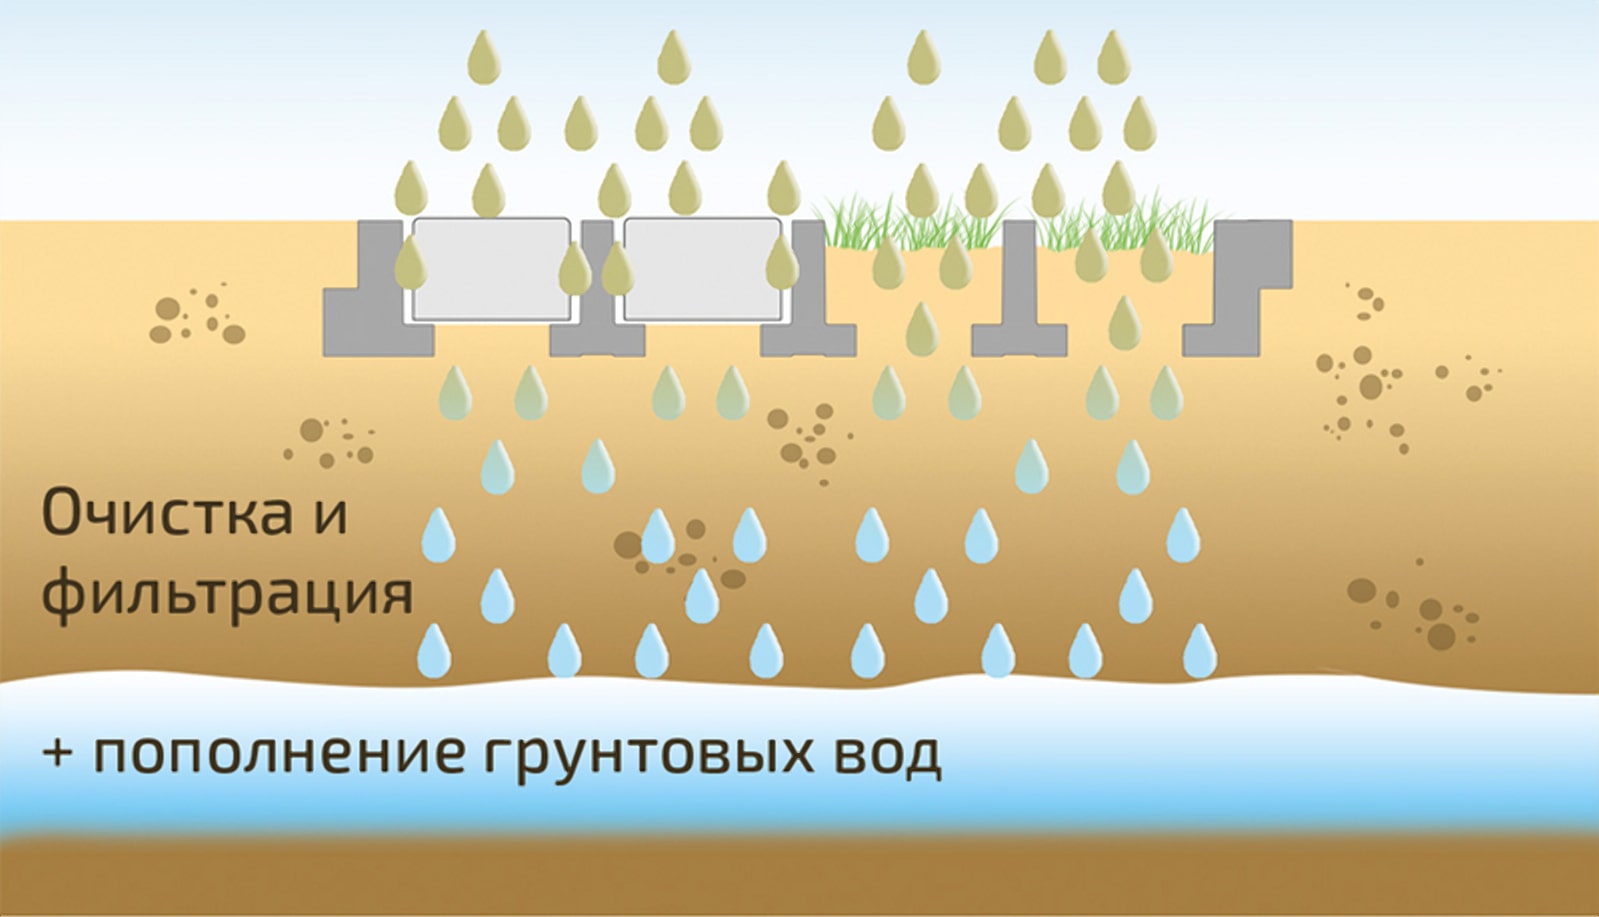 Источники пополнения грунтовых вод